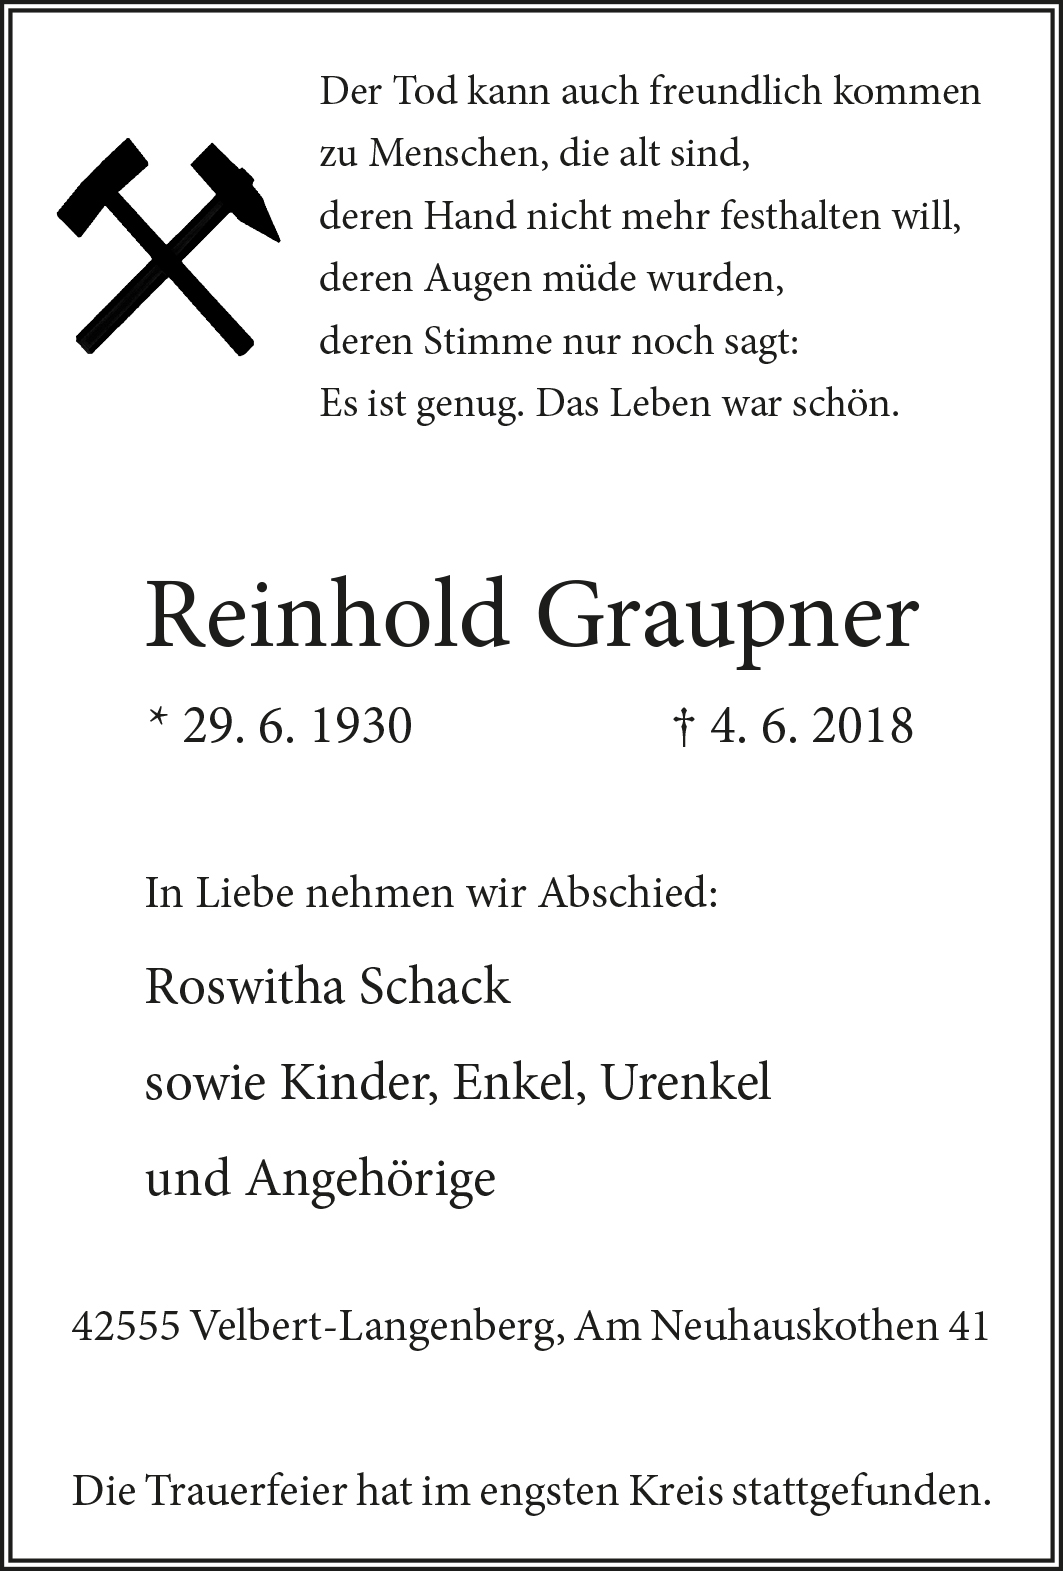 Reinhold Graupner